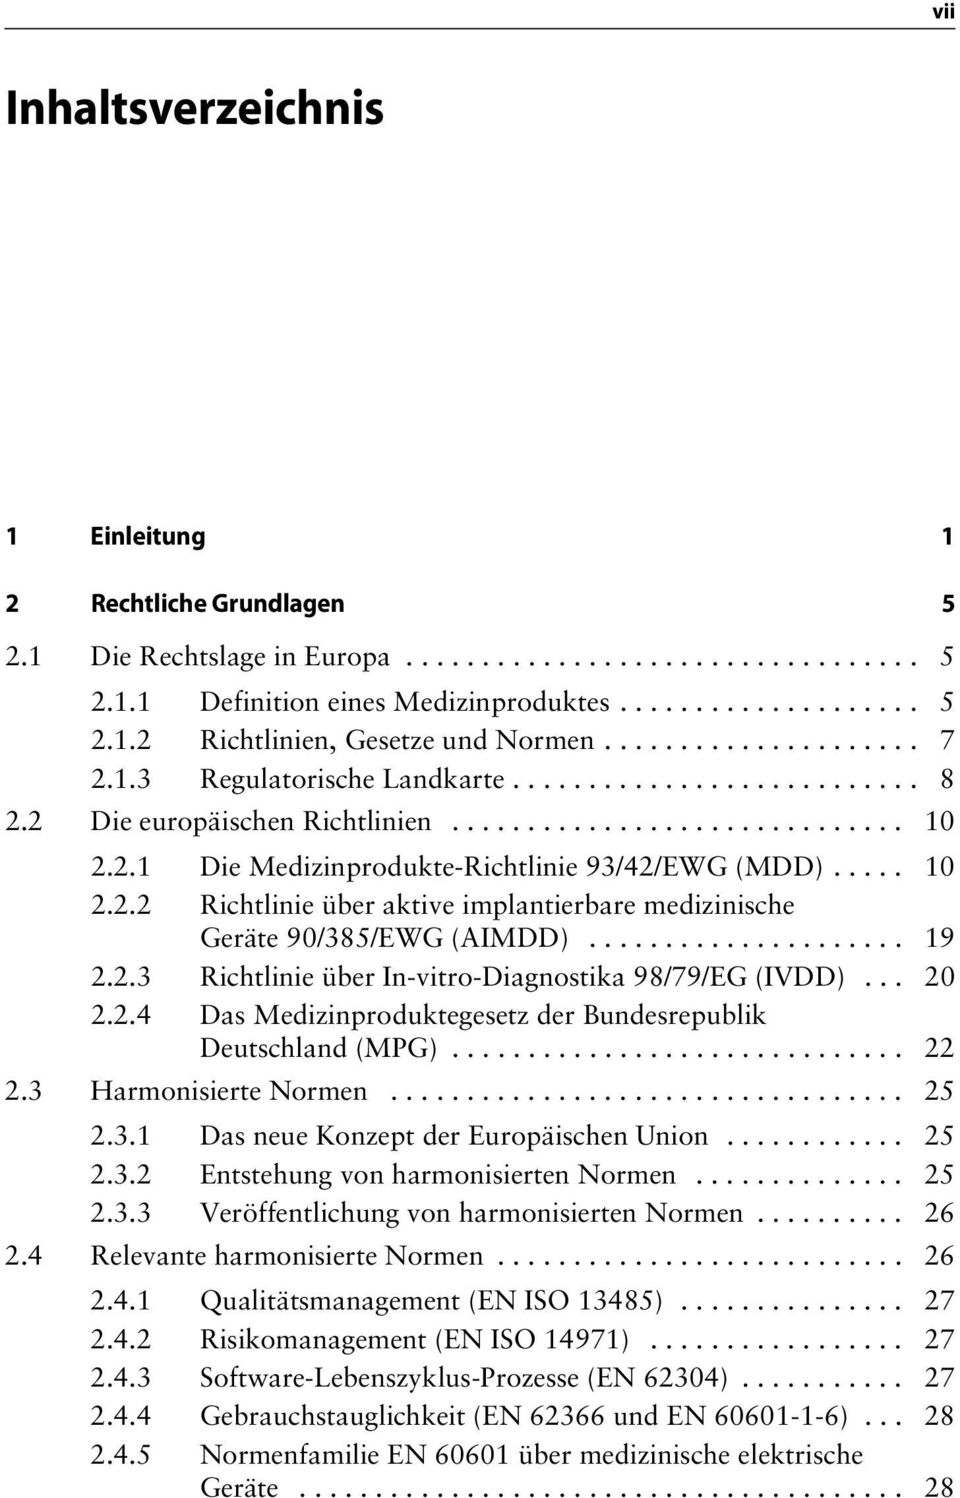 .... 10 2.2.2 Richtlinie über aktive implantierbare medizinische Geräte 90/385/EWG (AIMDD)..................... 19 2.2.3 Richtlinie über In-vitro-Diagnostika 98/79/EG (IVDD)... 20 2.2.4 Das Medizinproduktegesetz der Bundesrepublik Deutschland (MPG).